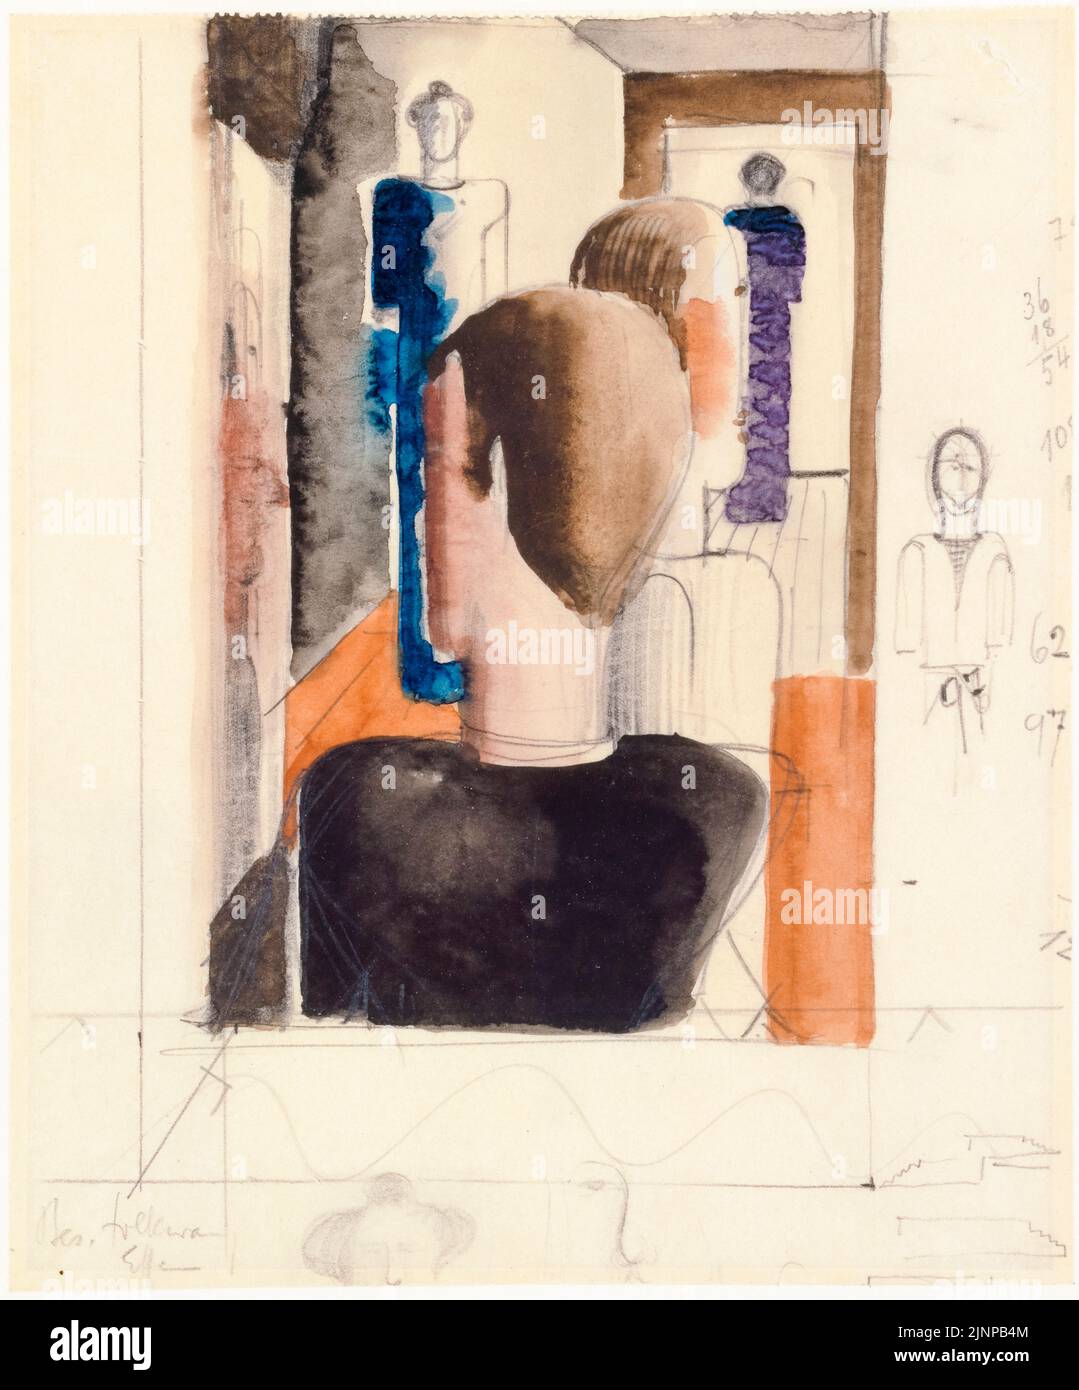 Oskar Schlemmer, Vorstudie für den Innenraum mit fünf Figuren, Roman, Malerei, 1925 Stockfoto